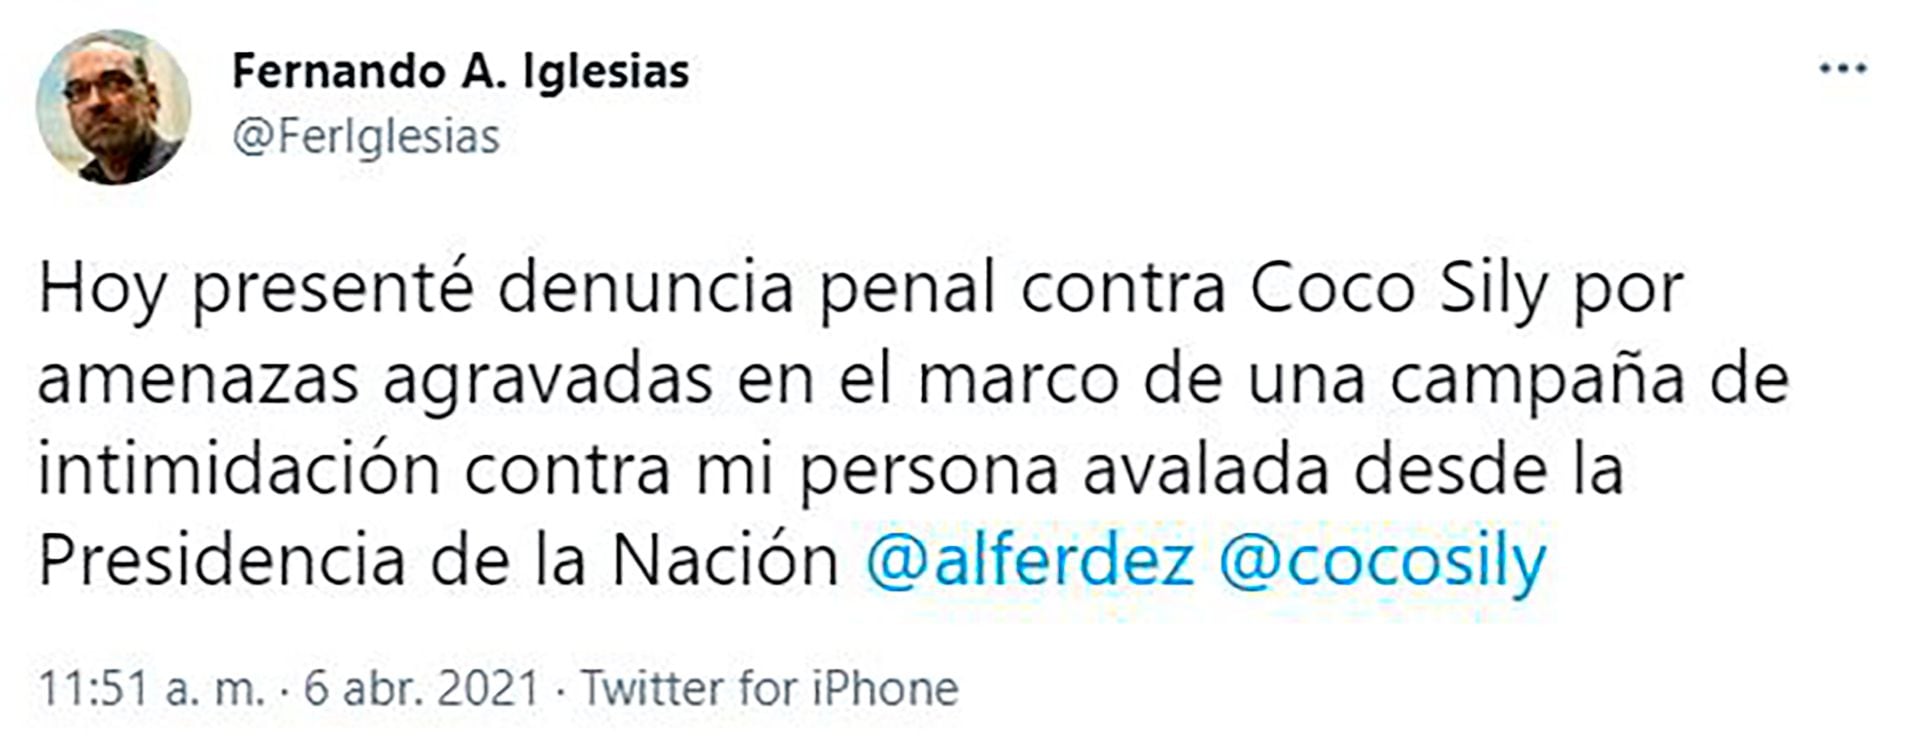 Fernando Iglesias anunció su denuncia contra Coco Sily por amenazas agravadas en Twitter 